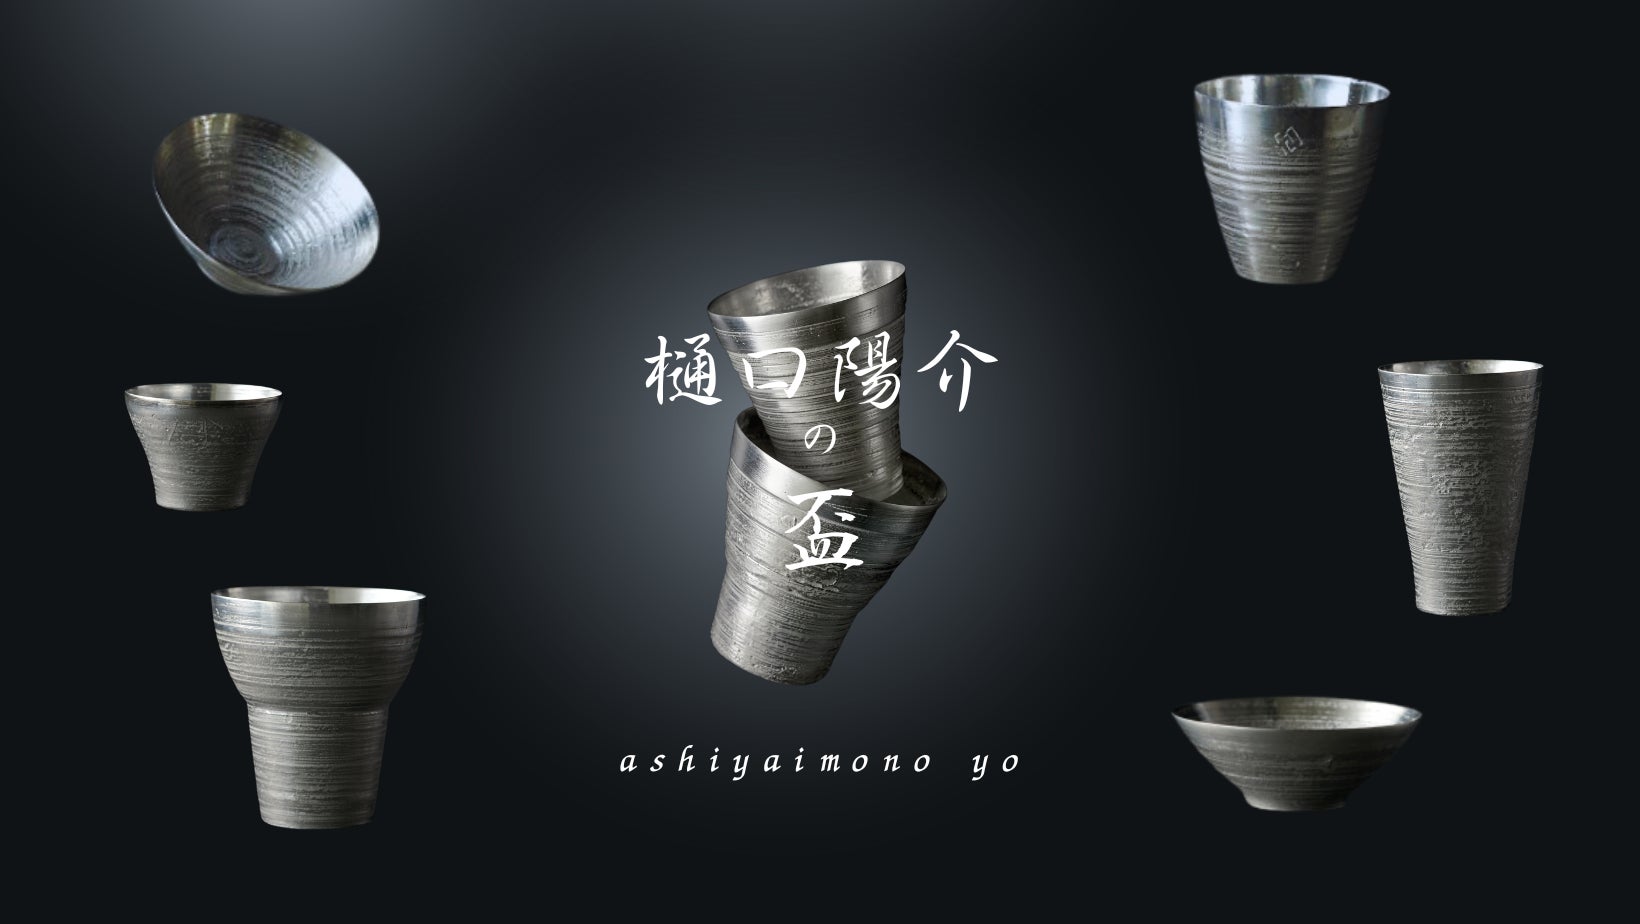 【福岡県芦屋町】復元した文化遺産を未来に生かすため多様化。幻の名器「芦屋釜」茶の湯釜の技術を新たな展開で美しい日本の伝統を日々の中へ